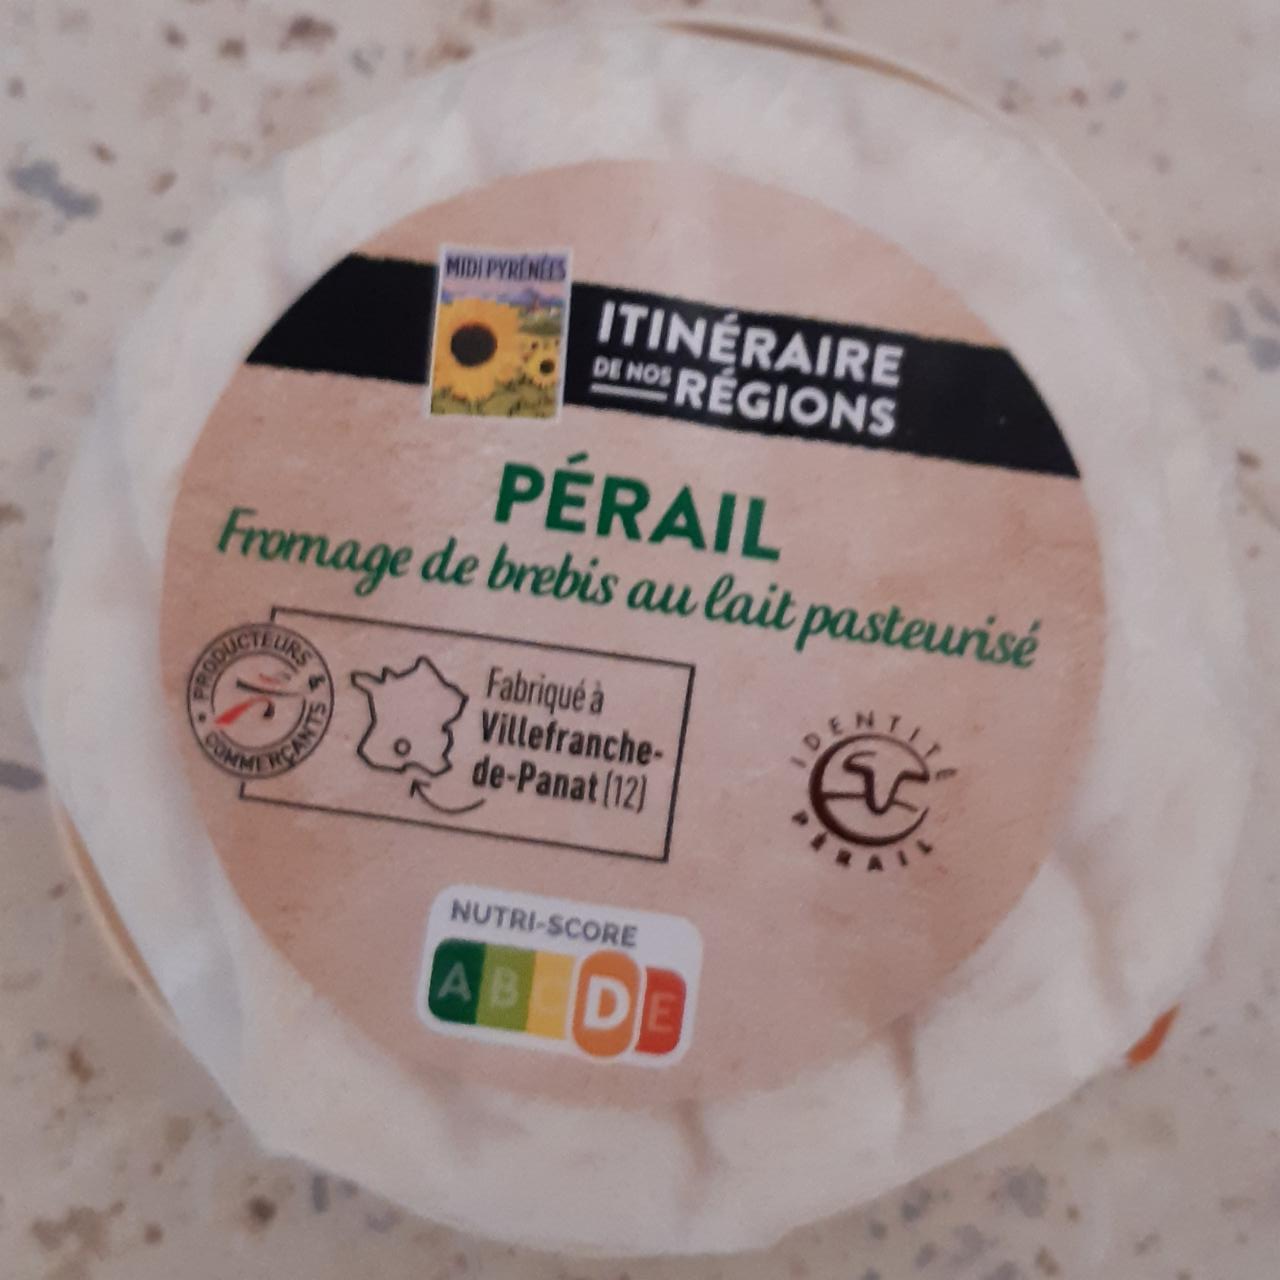 Fotografie - Pérail fromage de brebis Itinéraire de nos Régions